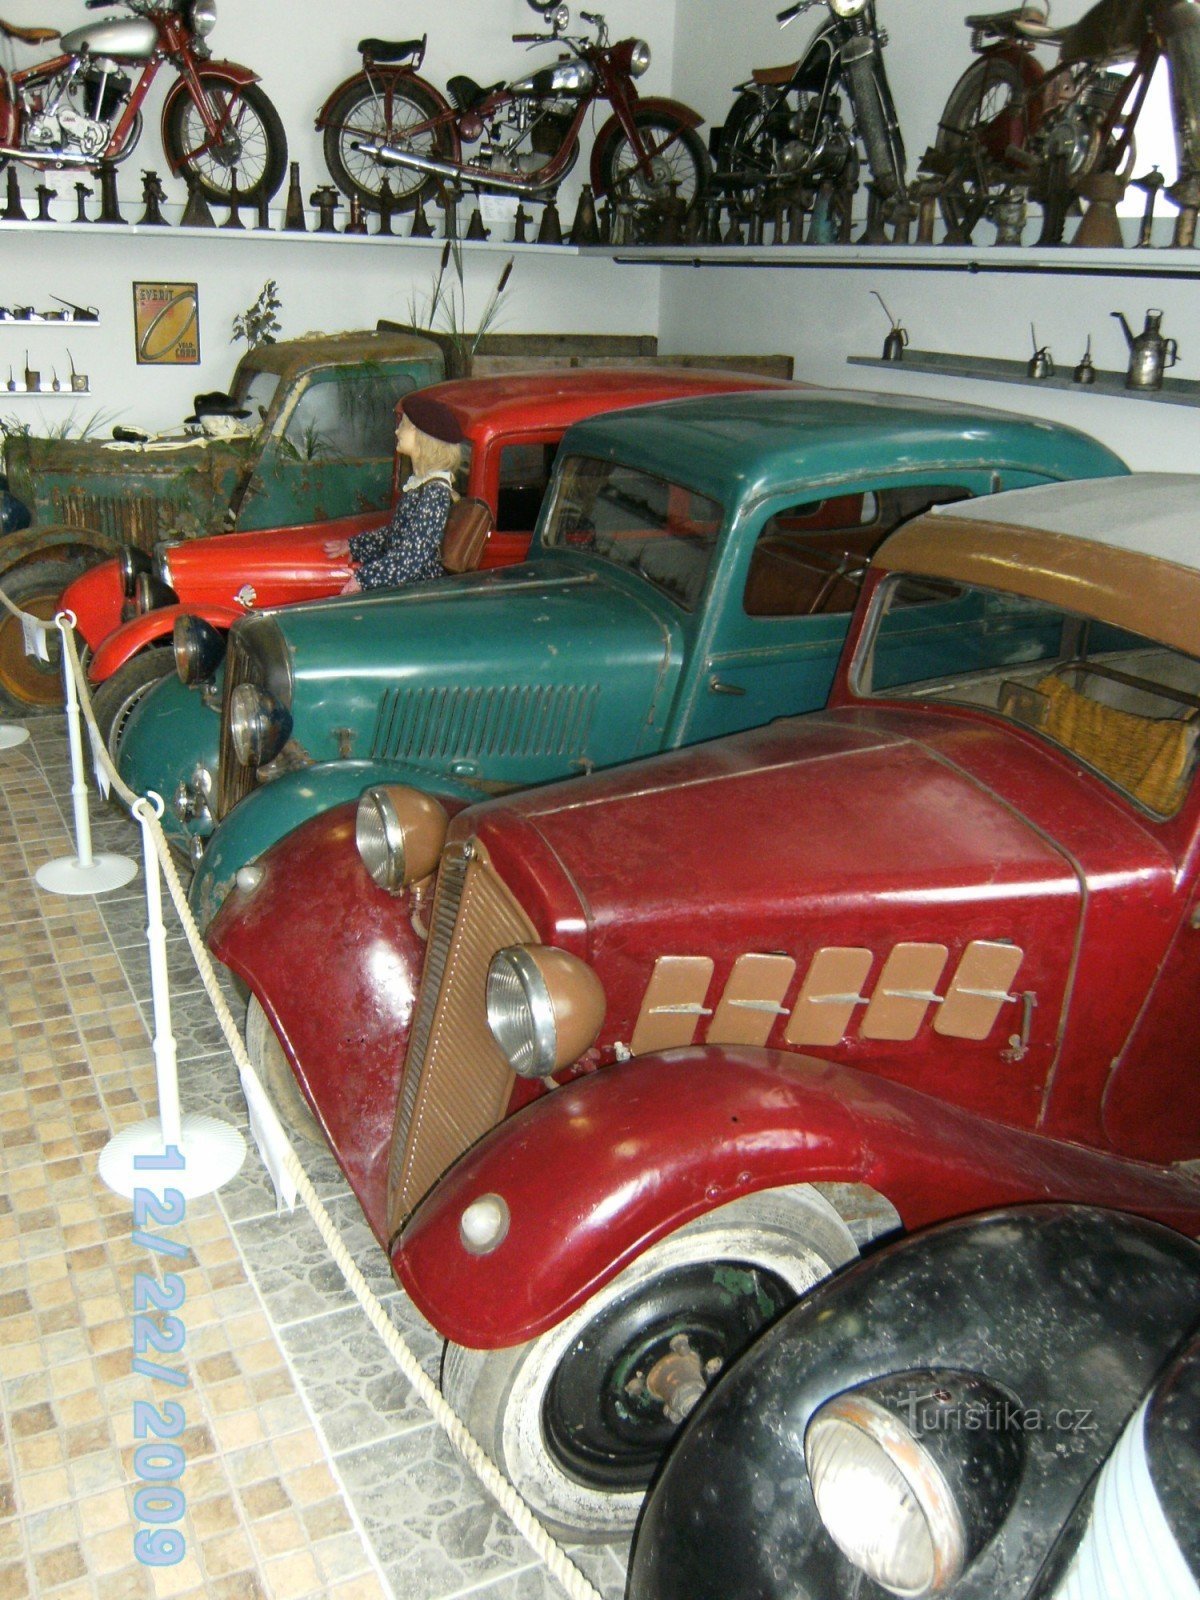 兹诺伊莫 - 汽车博物馆